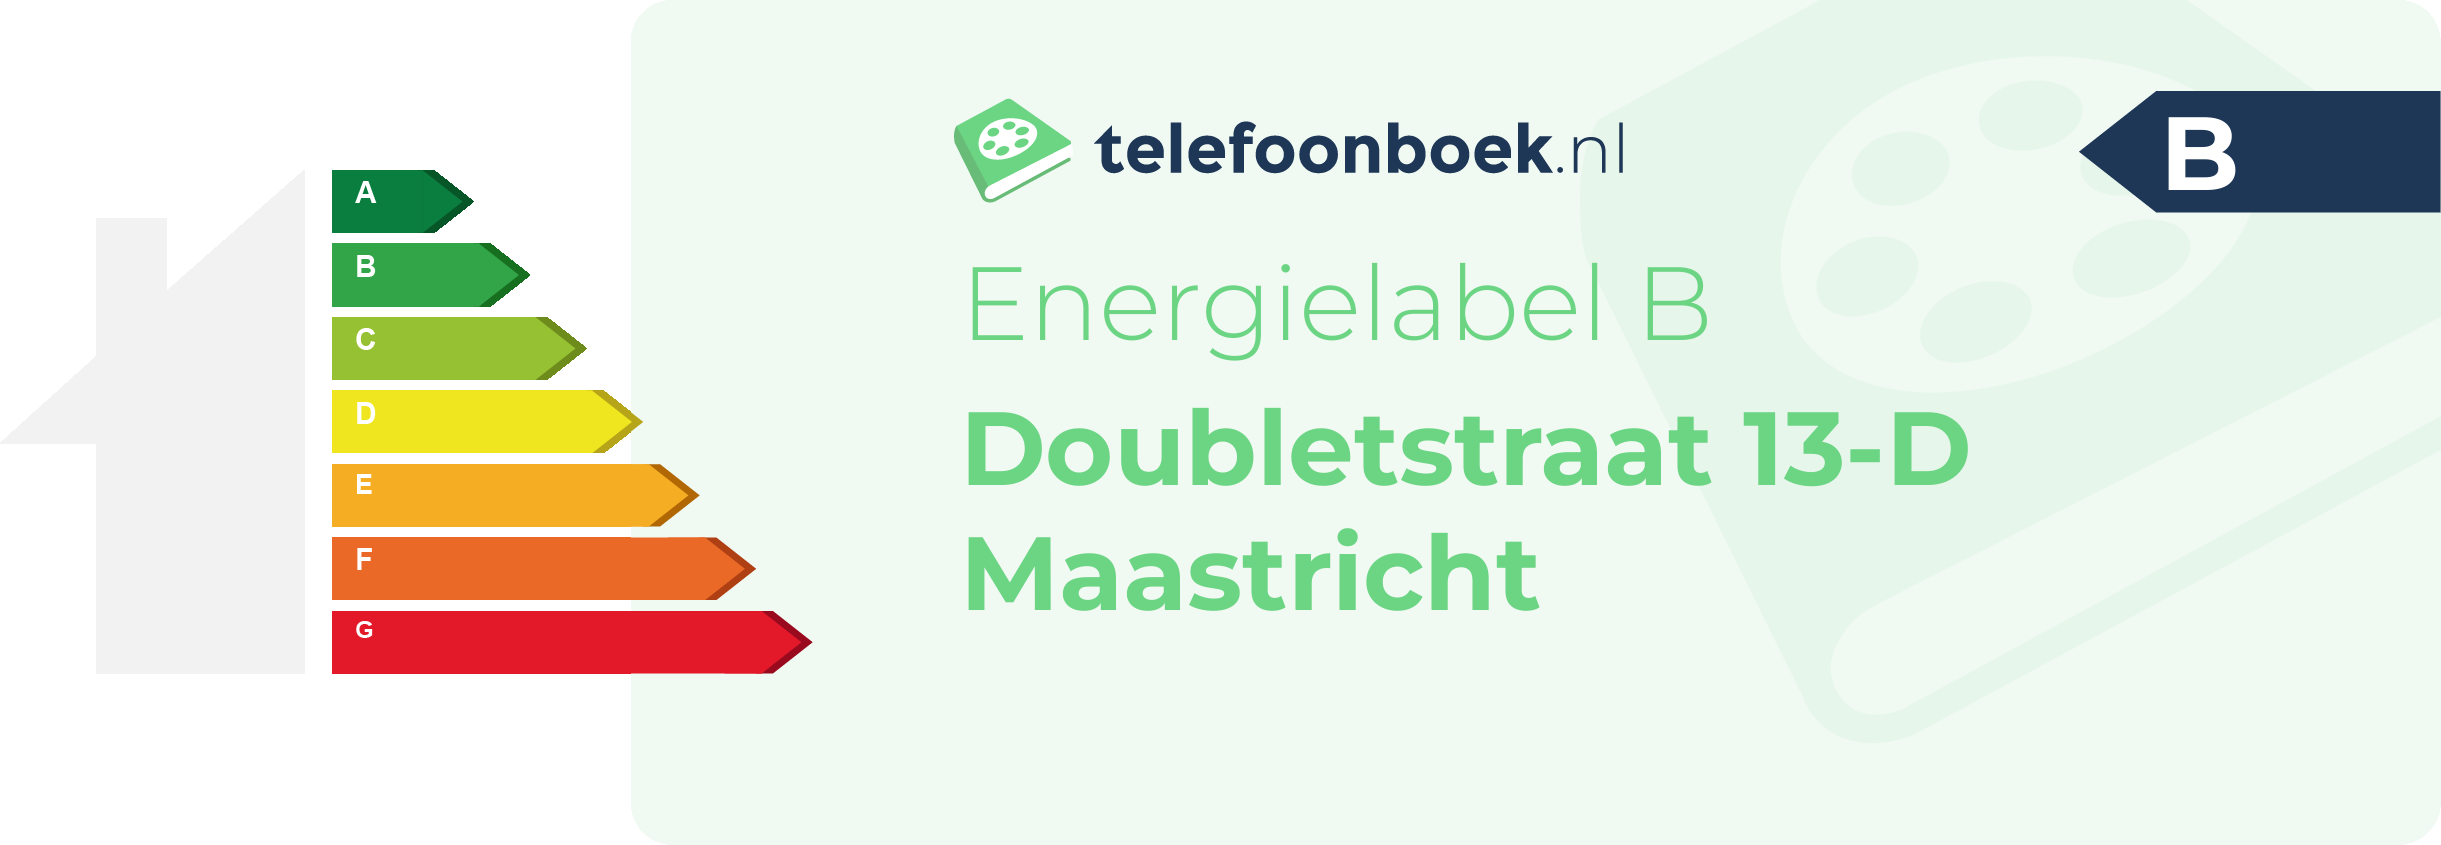 Energielabel Doubletstraat 13-D Maastricht